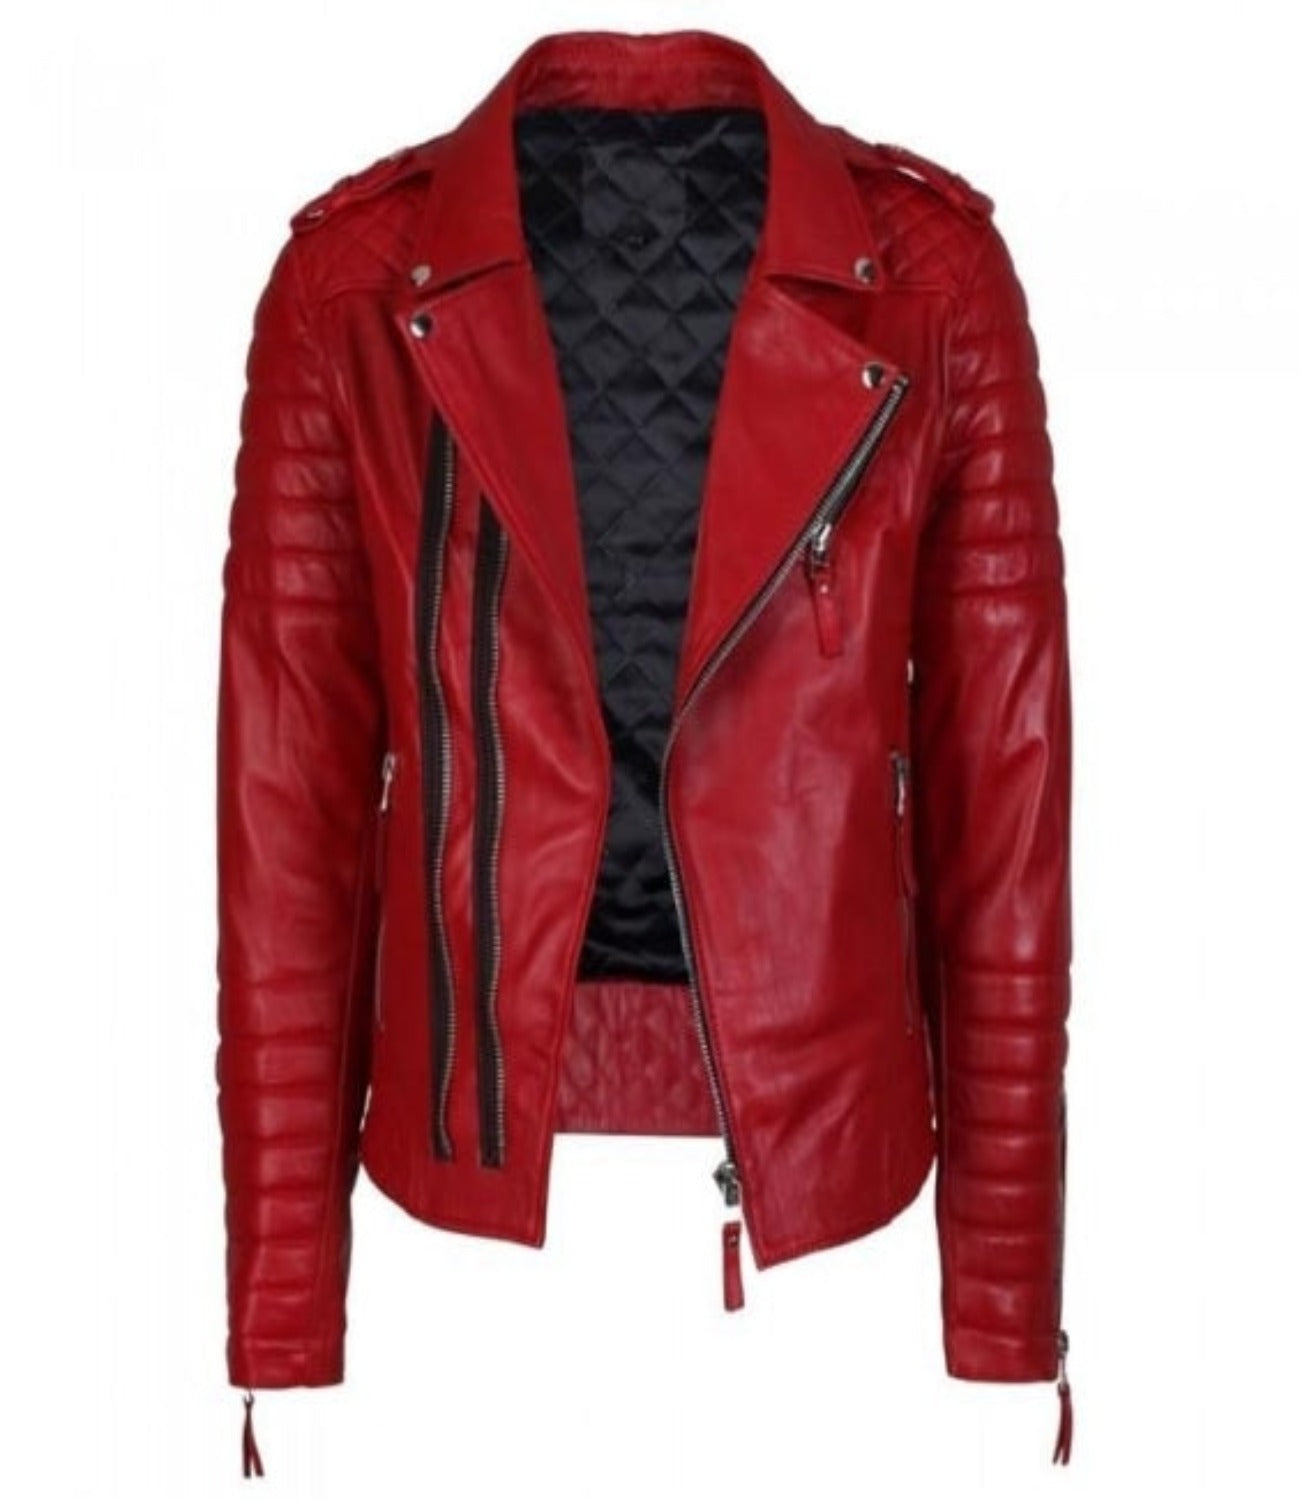 Men’s Supreme Red Biker Fashion Leather Jacket